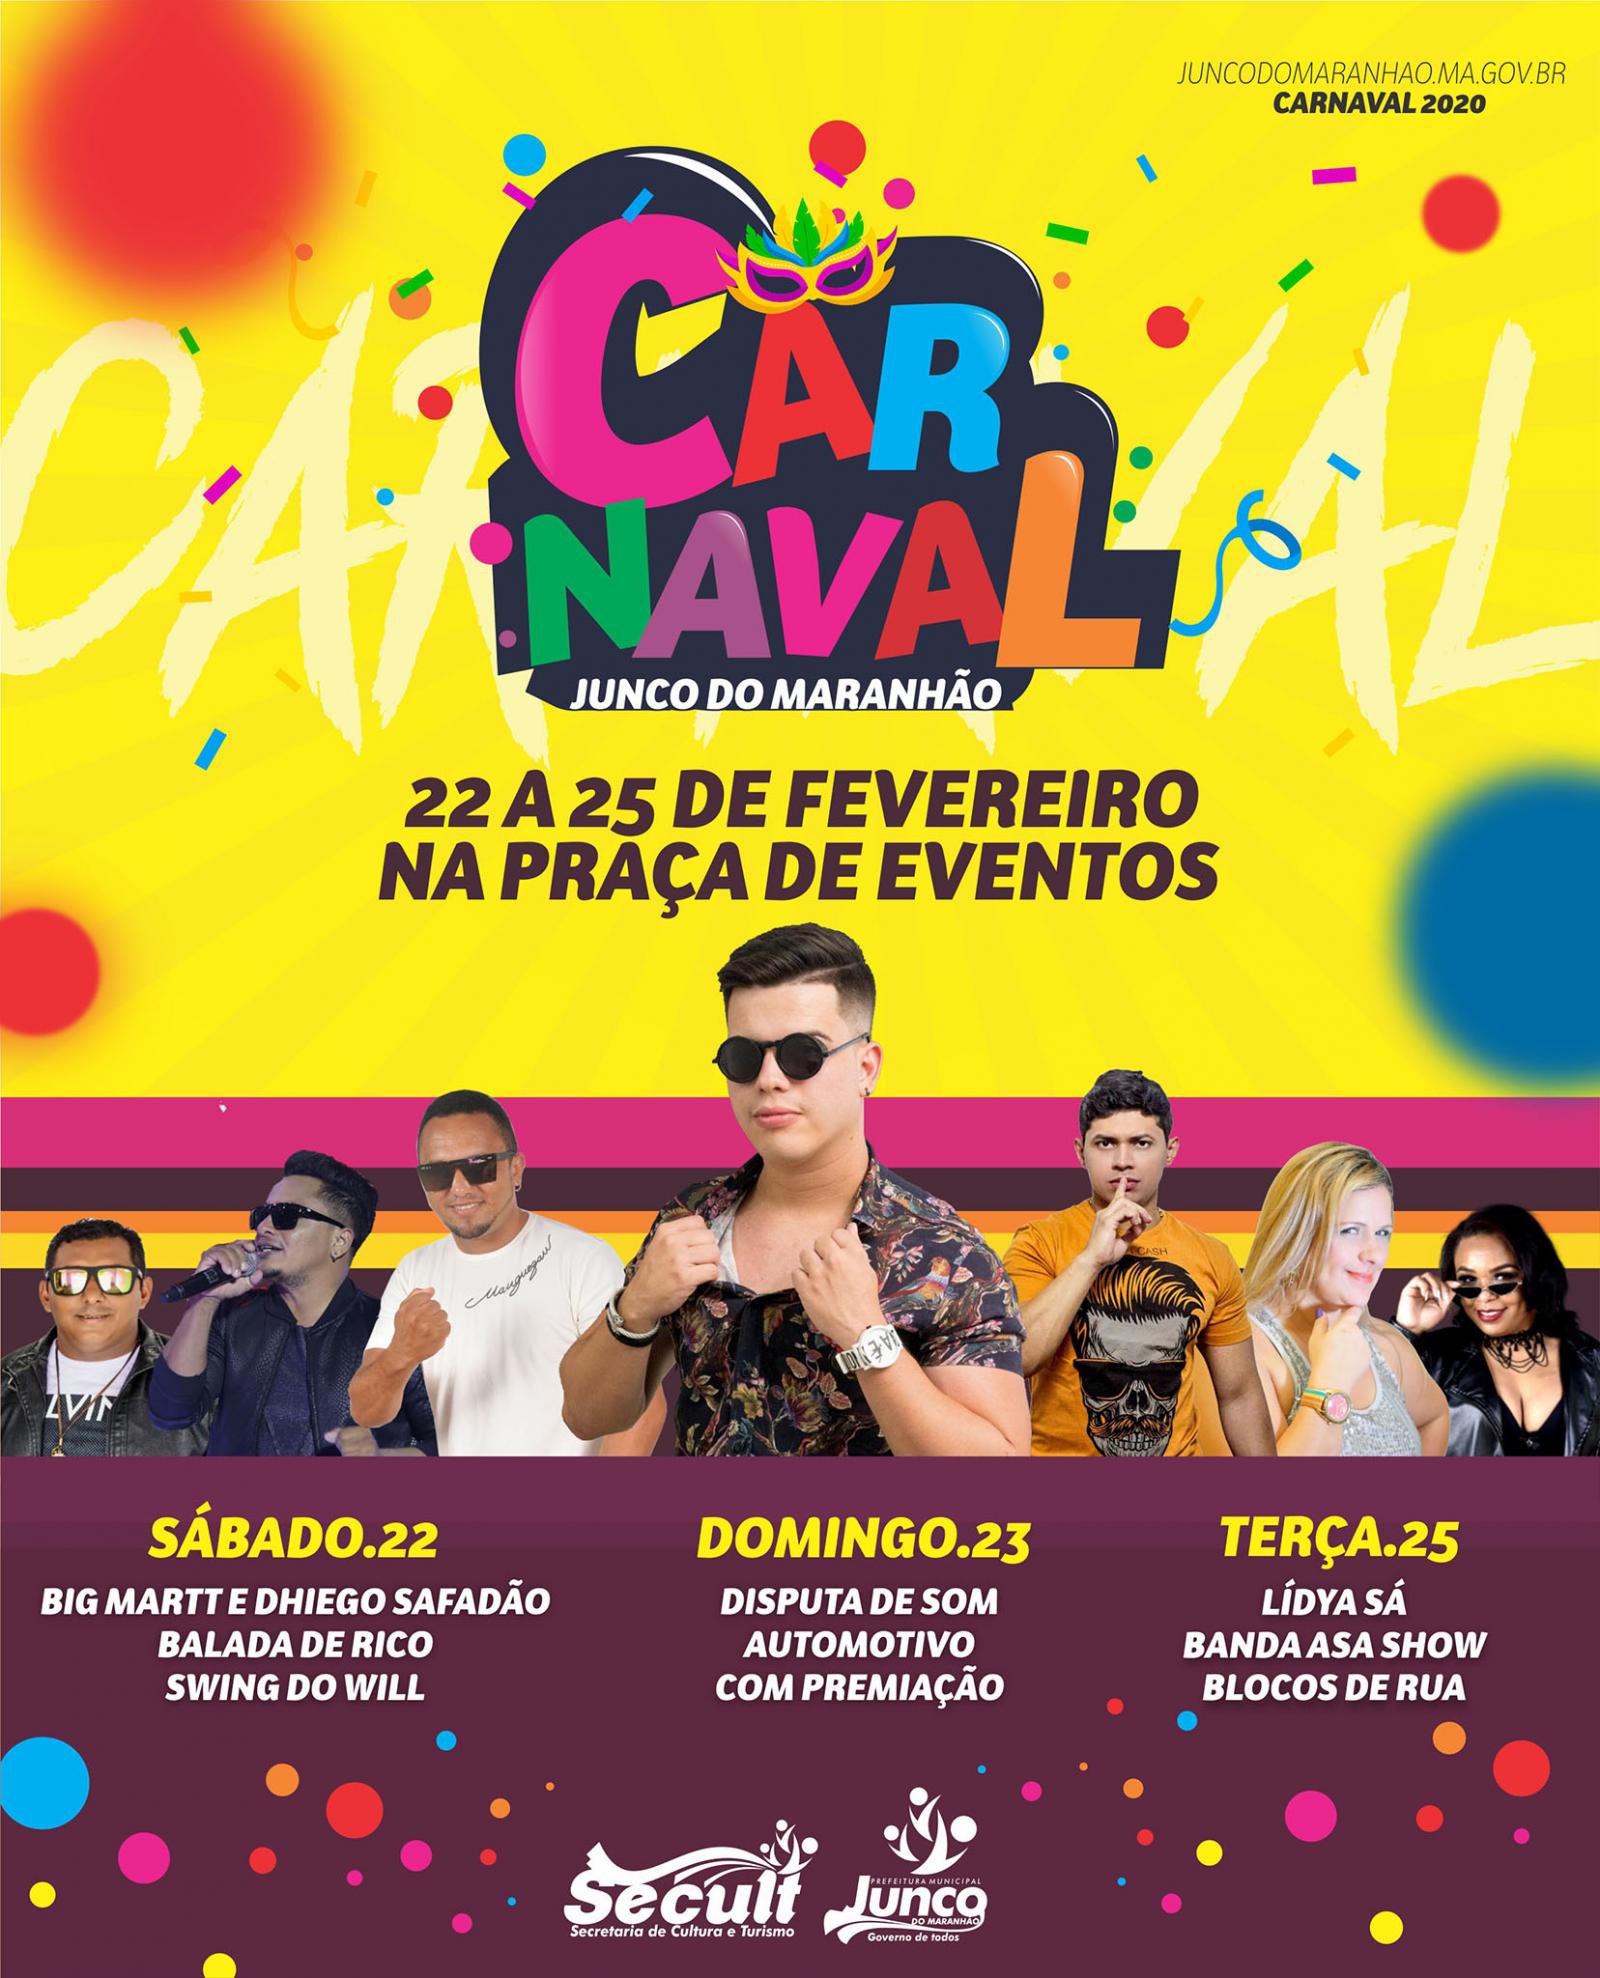 Carnaval de Junco do Maranhão está com programação fechada